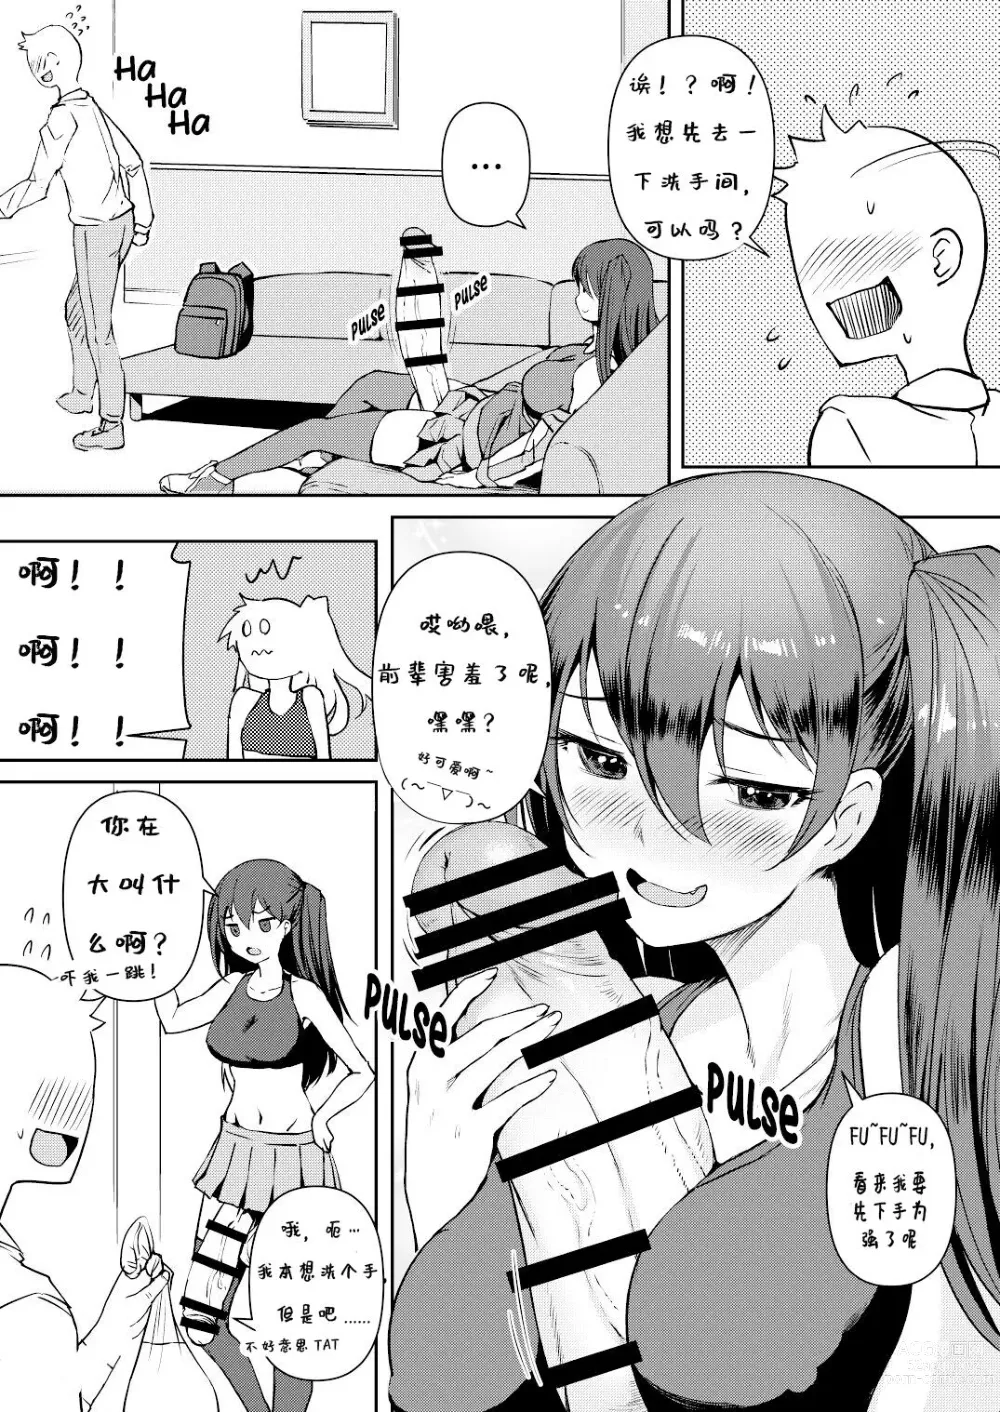 Page 5 of doujinshi Futanari Kanojo 2 - Futa girl friend 2